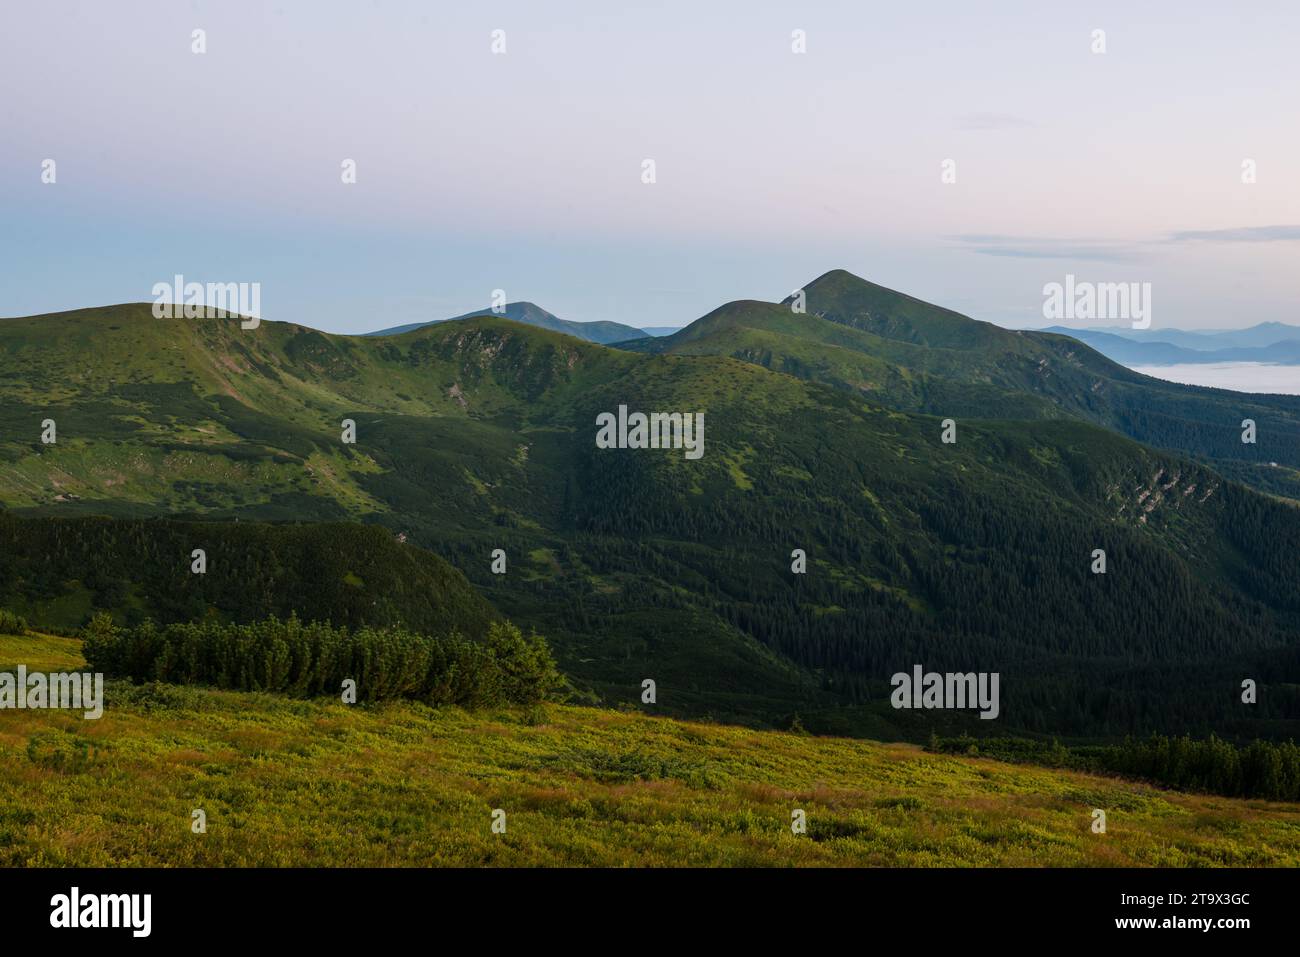 Summer on Chornohora mountain ridge in Carpathian mountains, Ukraine Stock Photo